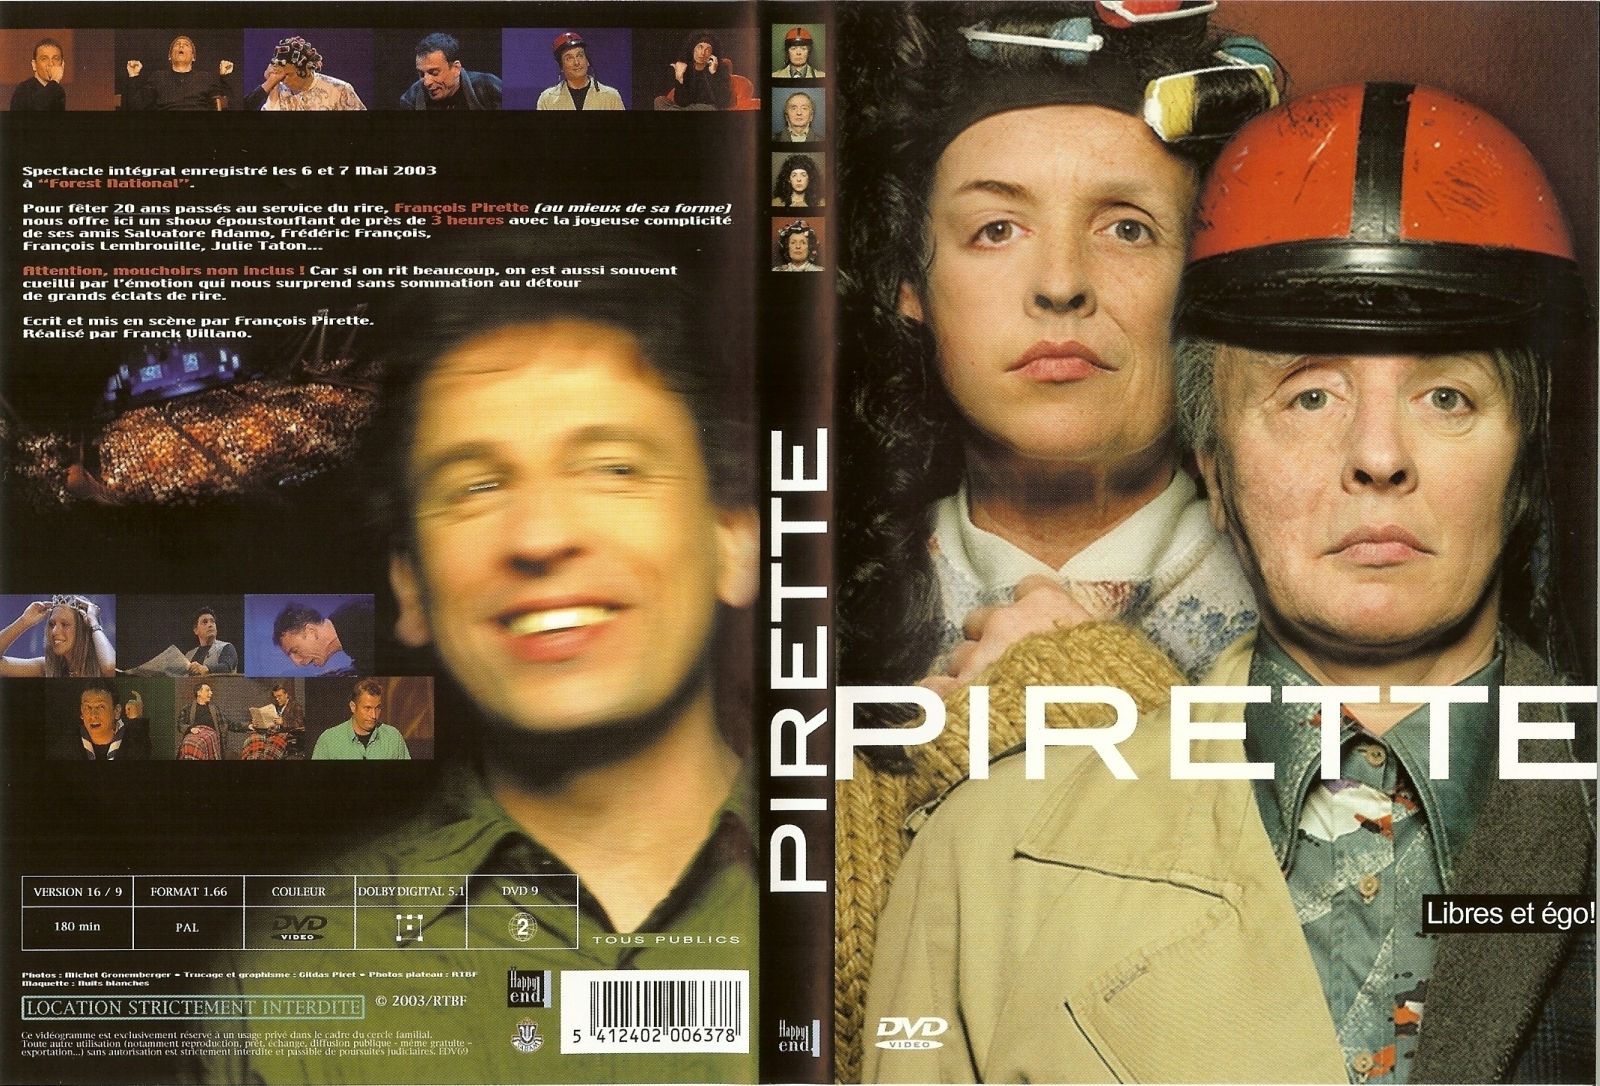 Jaquette DVD Pirette libres et ego v2